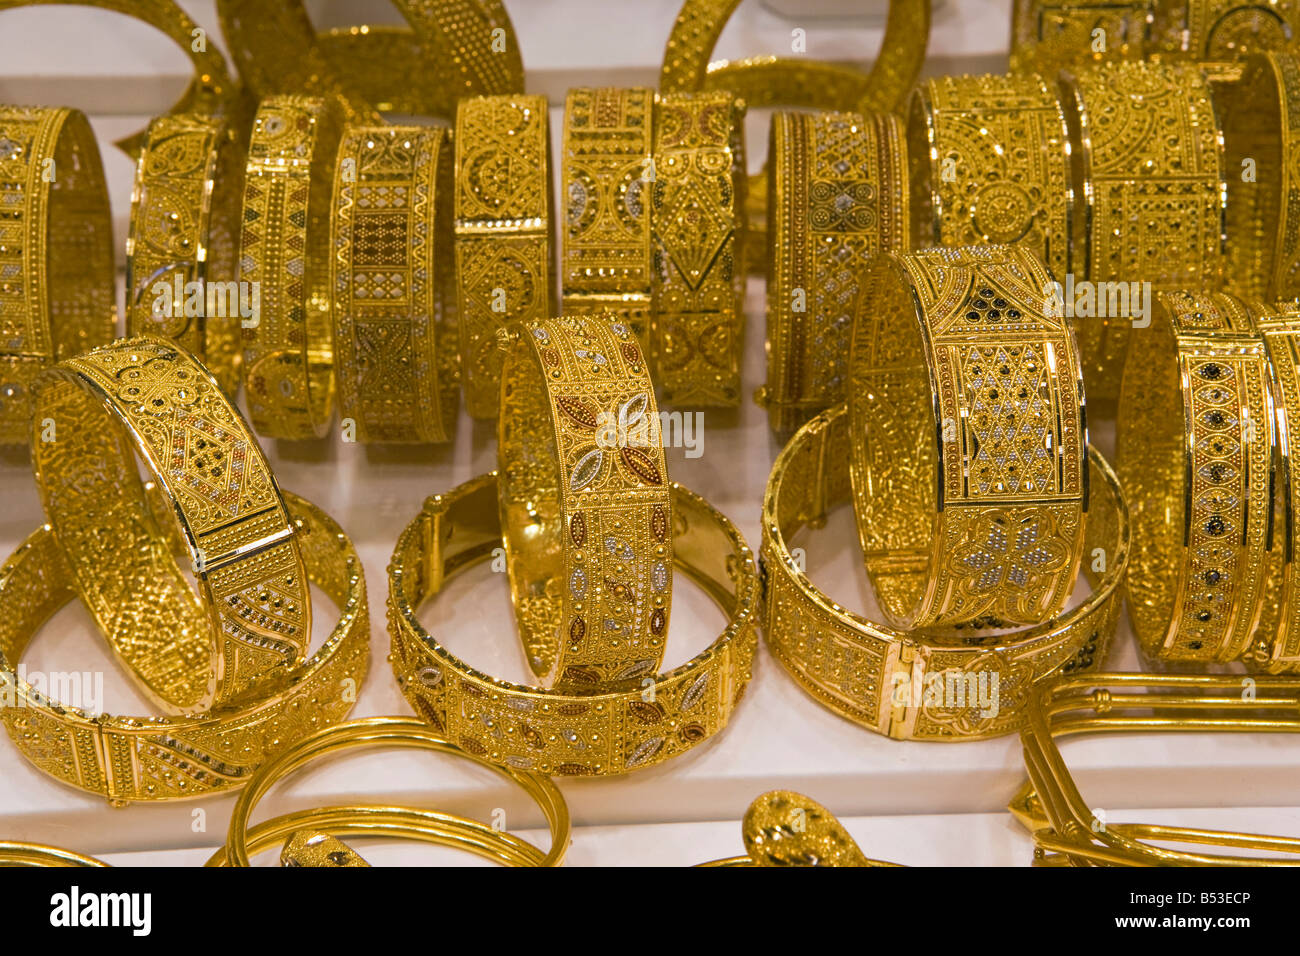 Окруженный золотым. Золотой рынок Gold Souk. Эмиратское золото. Турецкие золотые украшения. Арабские золотые украшения.